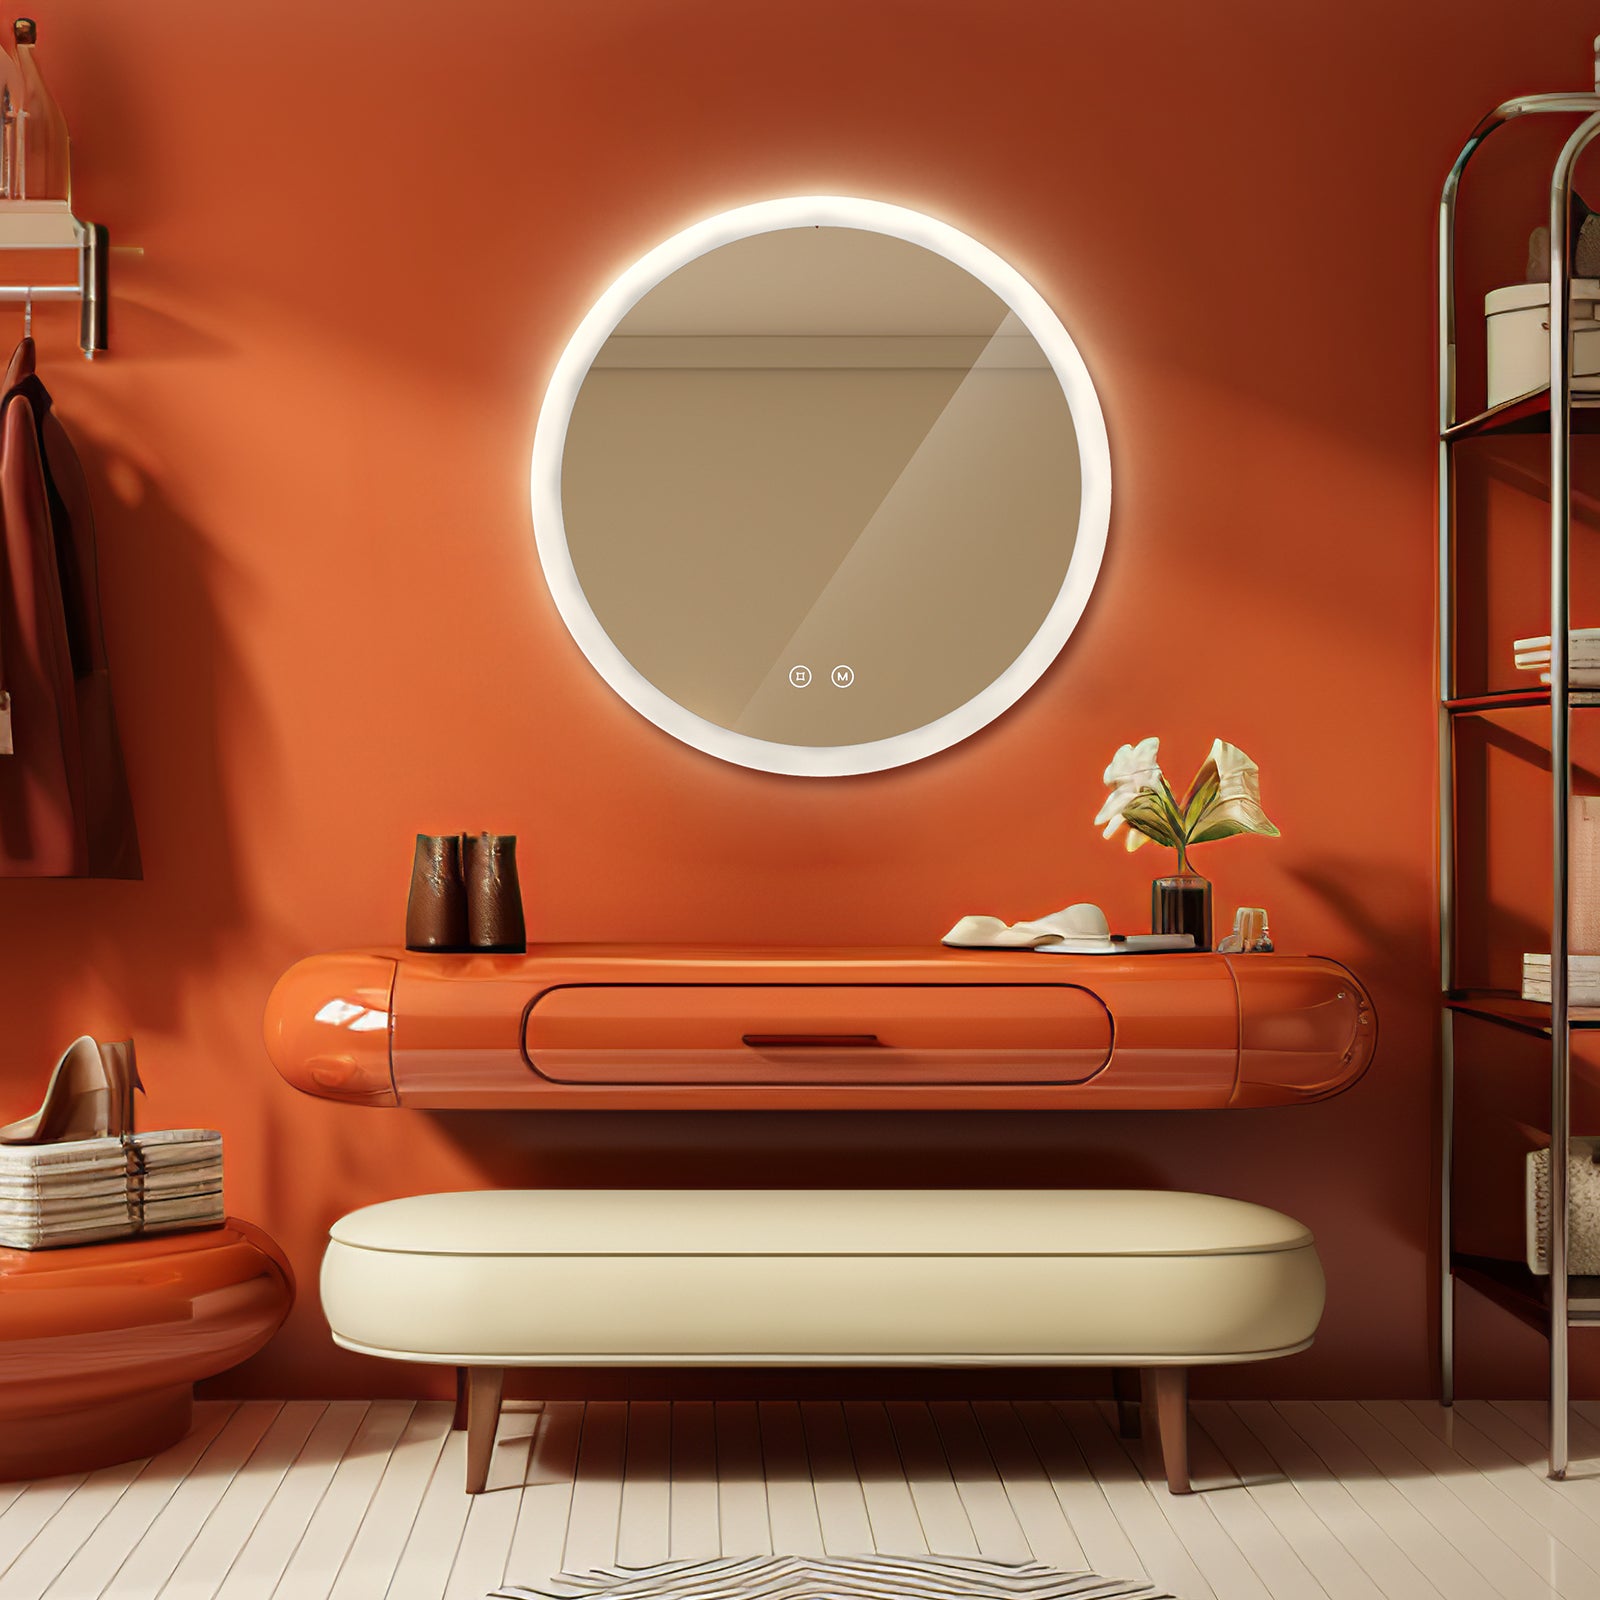 EMKE Badezimmer Wandspiegel Rund „LeeMi γ Pro“ 3 Lichtfarben dimmbar, Touch, Antibeschlag, 60x60cm